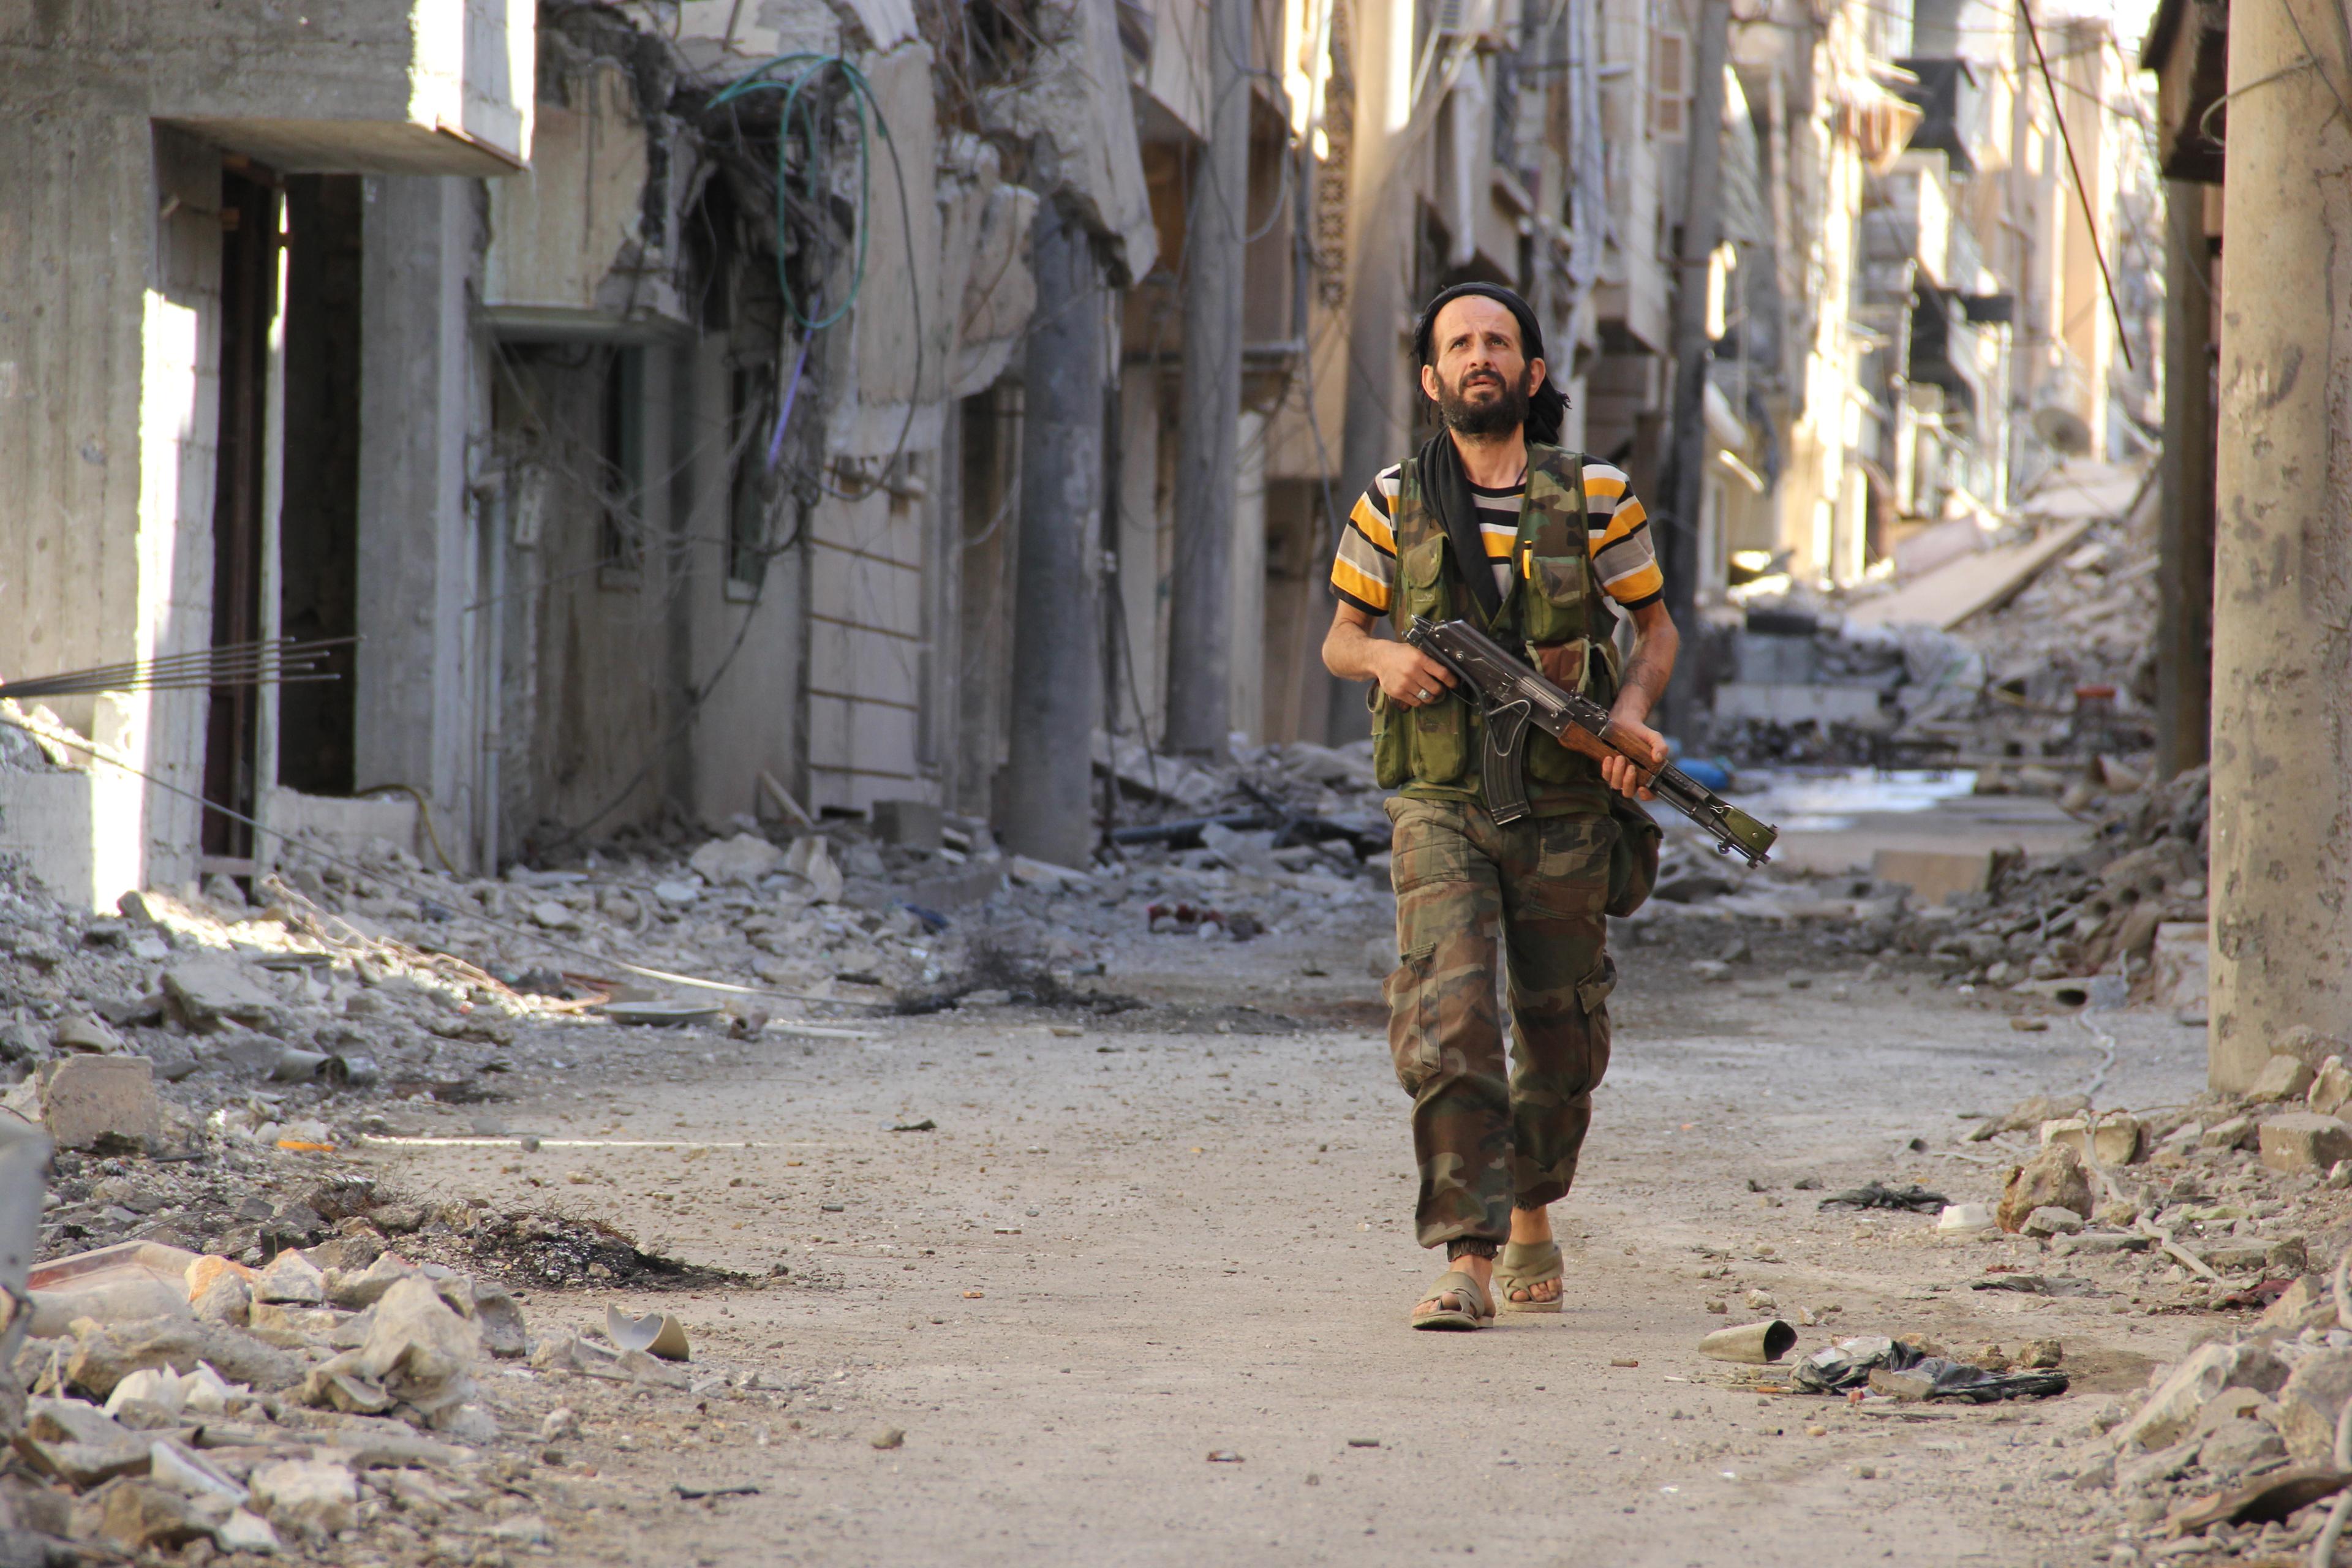 Free Syrian Army takes over parts of DeirEzzor